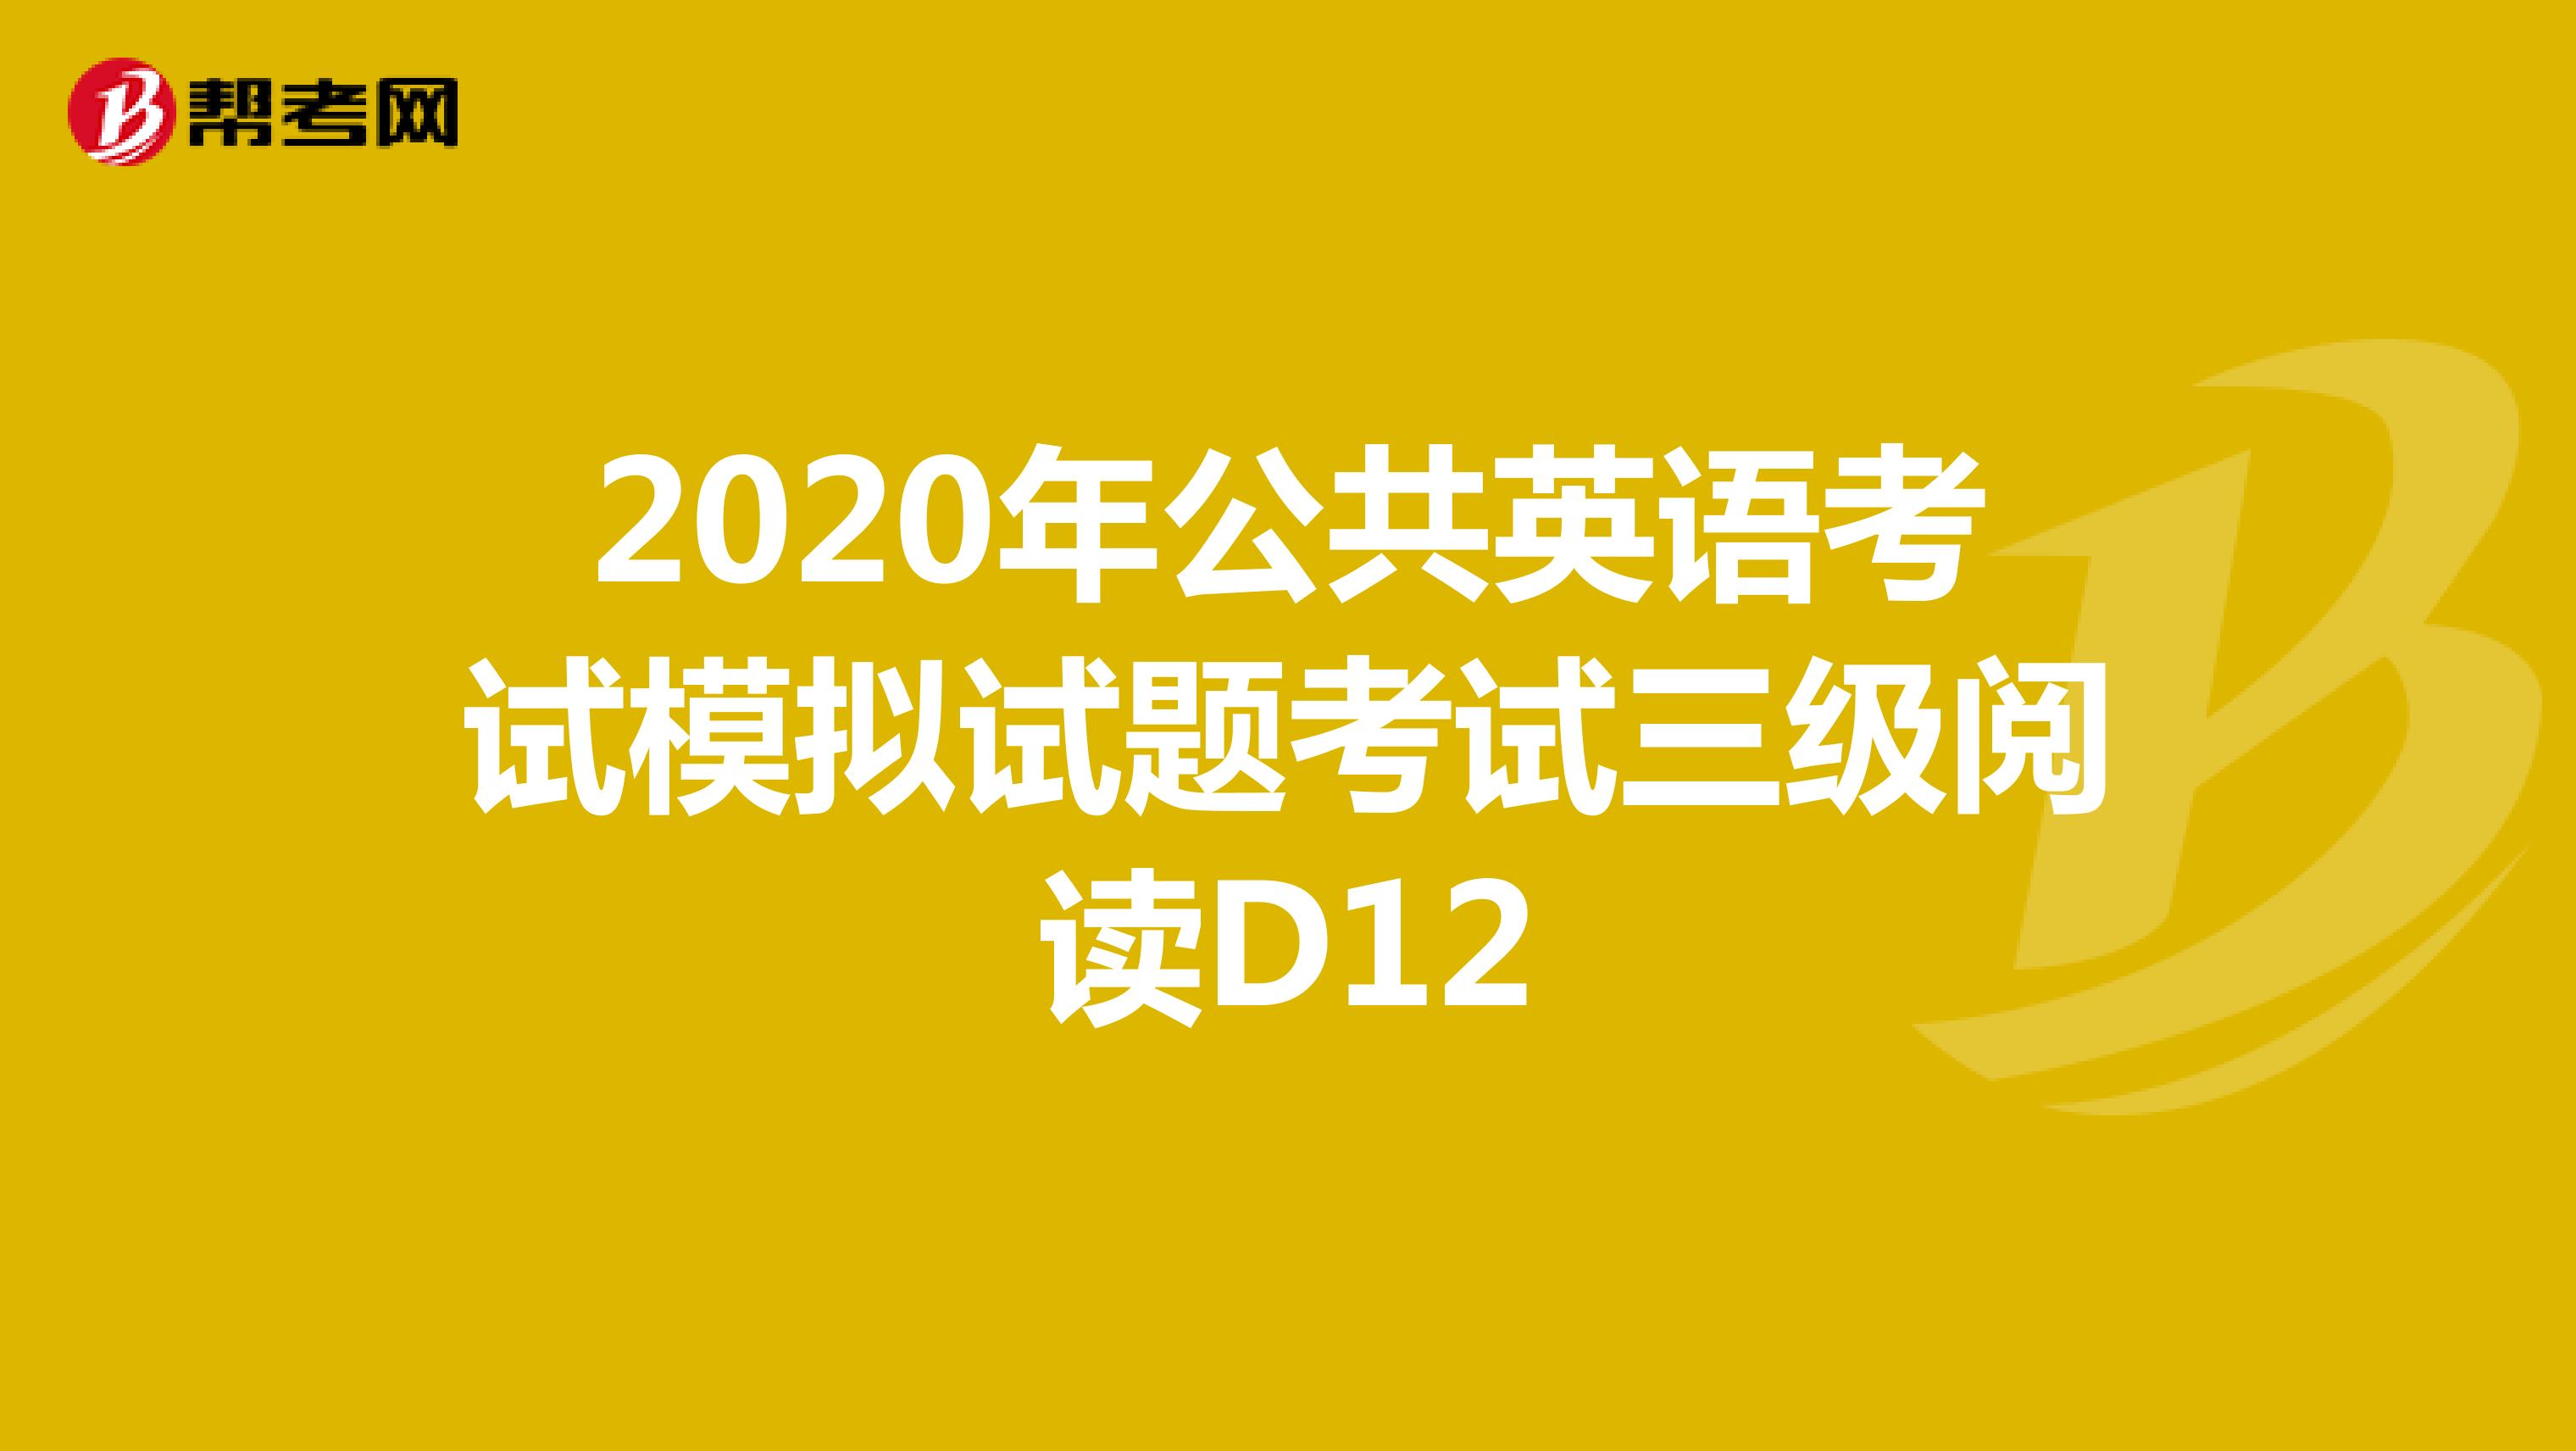 2020年公共英语考试模拟试题考试三级阅读D12